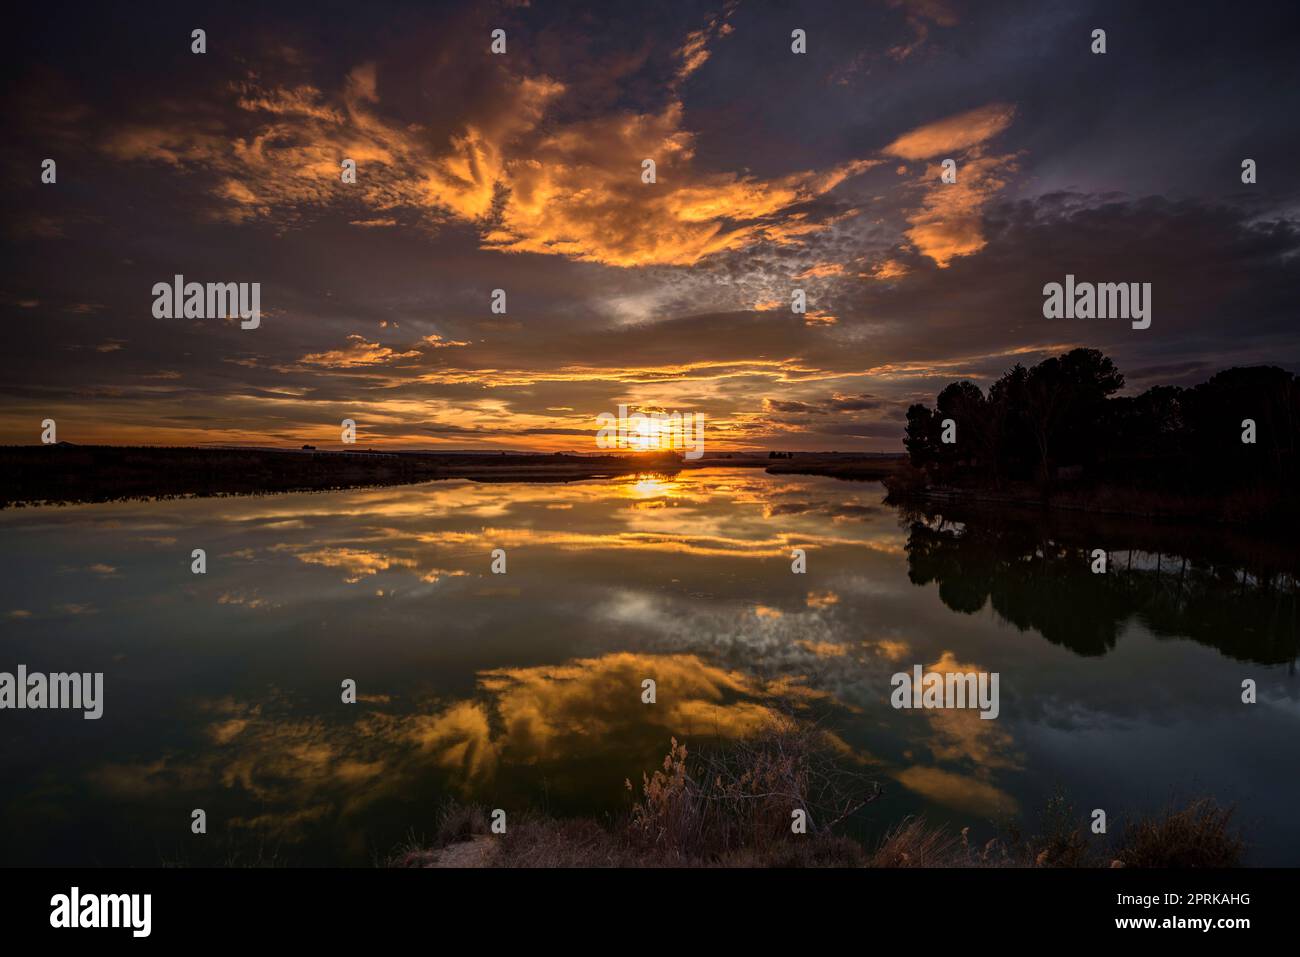 Sunset with a red sky in the Utxesa reservoir in Torres de Segre (Segrià, Lleida, Catalonia, Spain) ESP: Atardecer con cielo rojizo en Utxesa Stock Photo